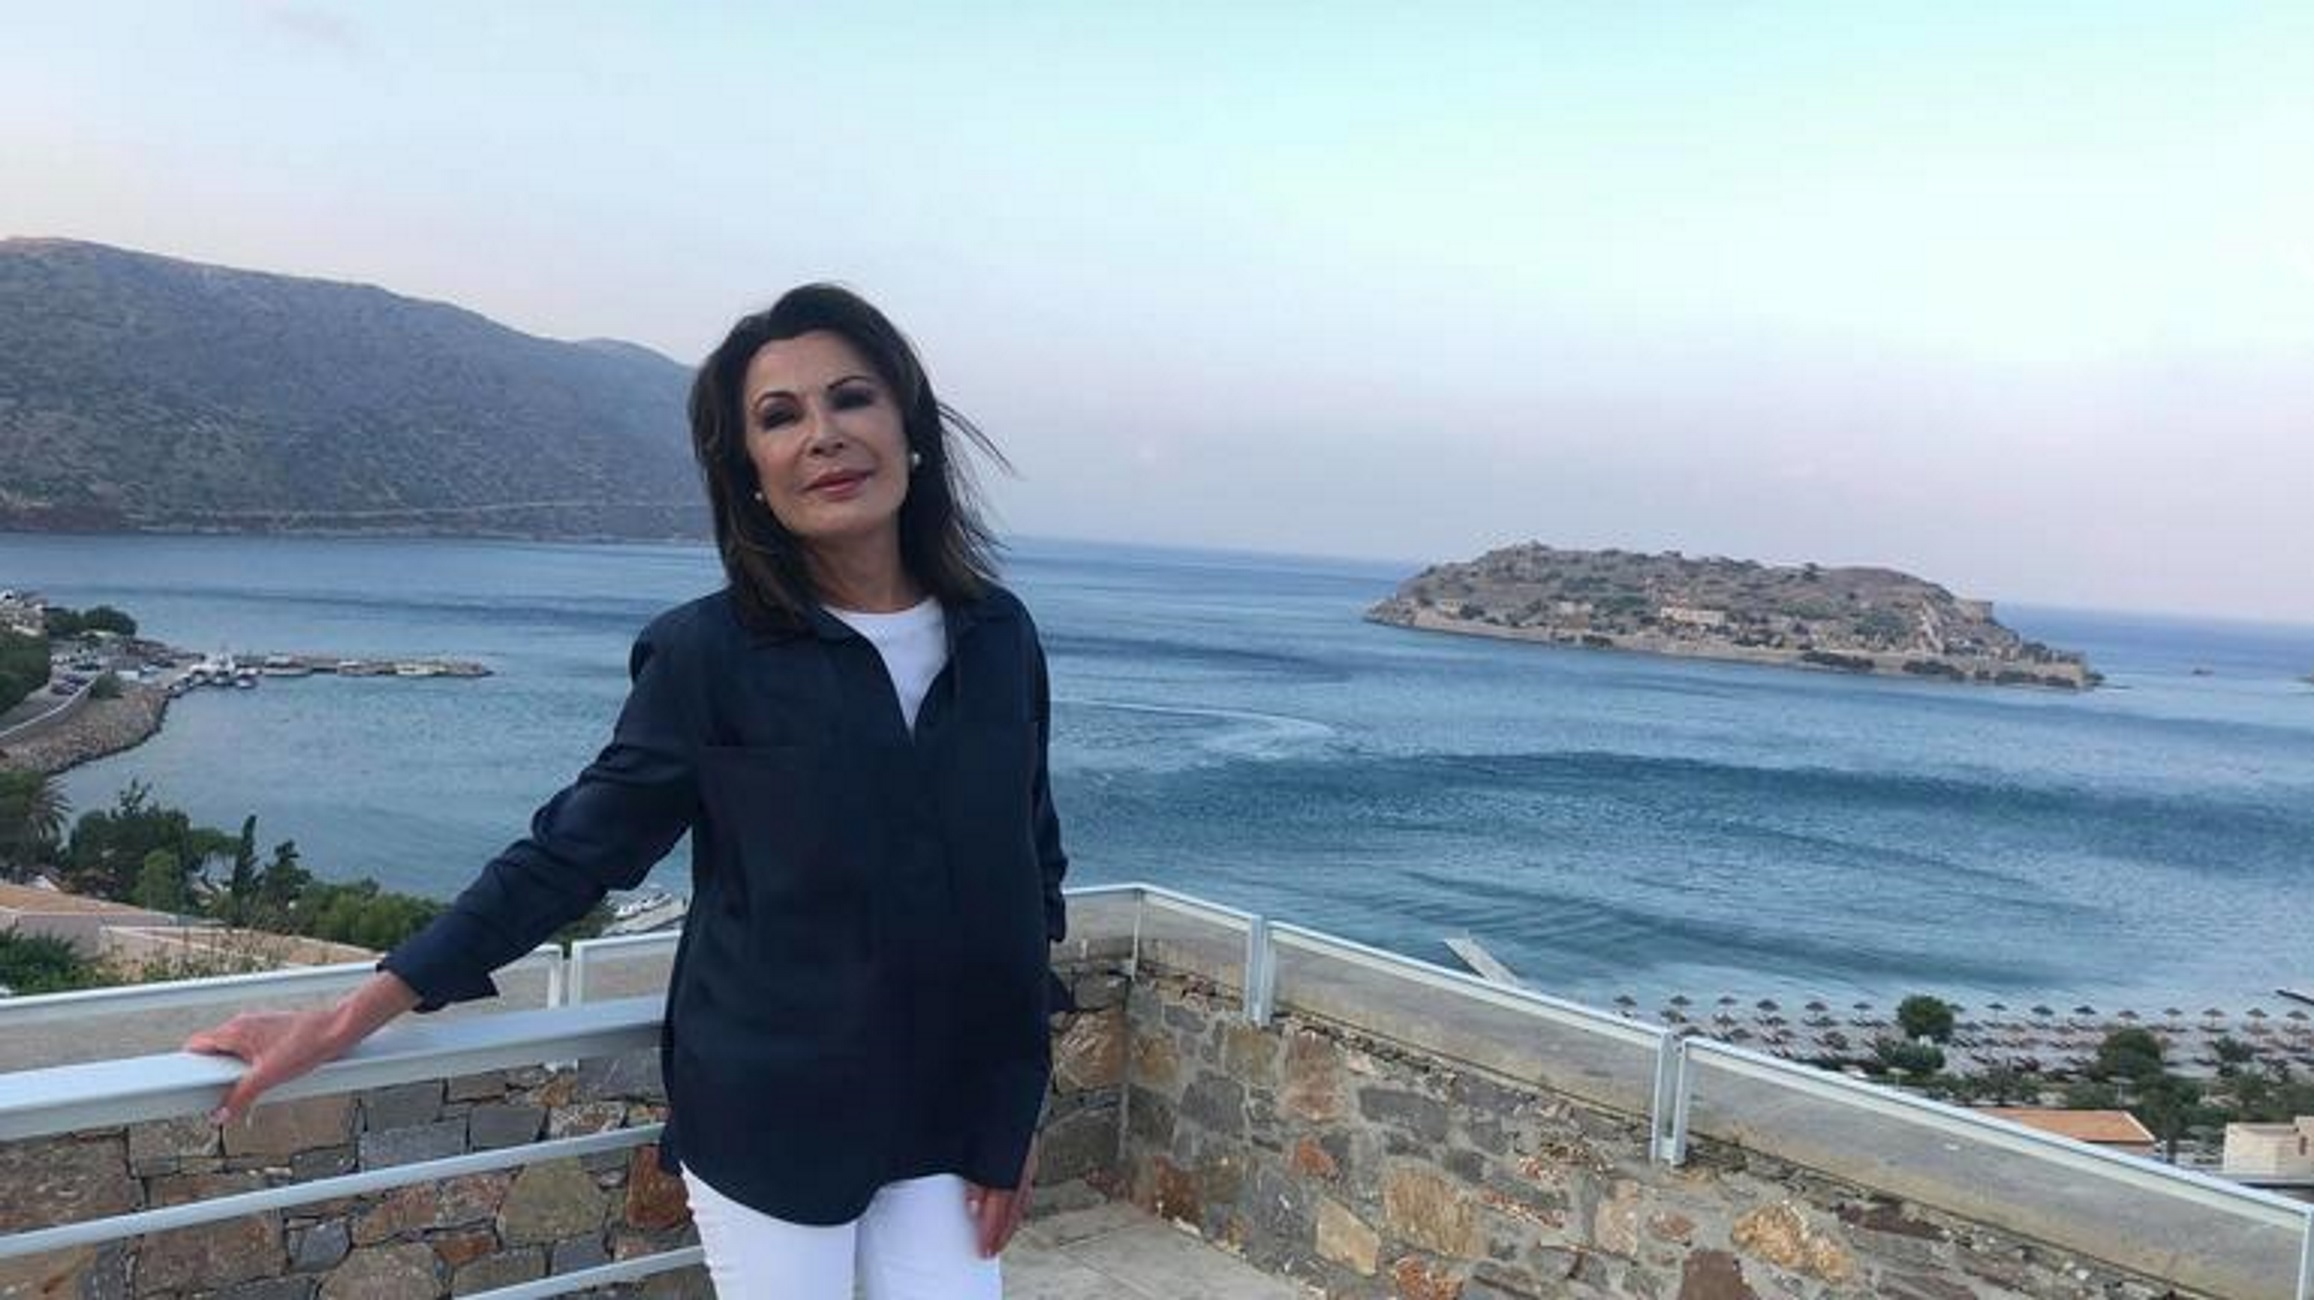 Κρήτη: Η Γιάννα Αγγελοπούλου στα… πάτρια εδάφη! Η πόζα στην Σπιναλόγκα και το μήνυμα στην Μαριάνα Βαρδινογιάννη